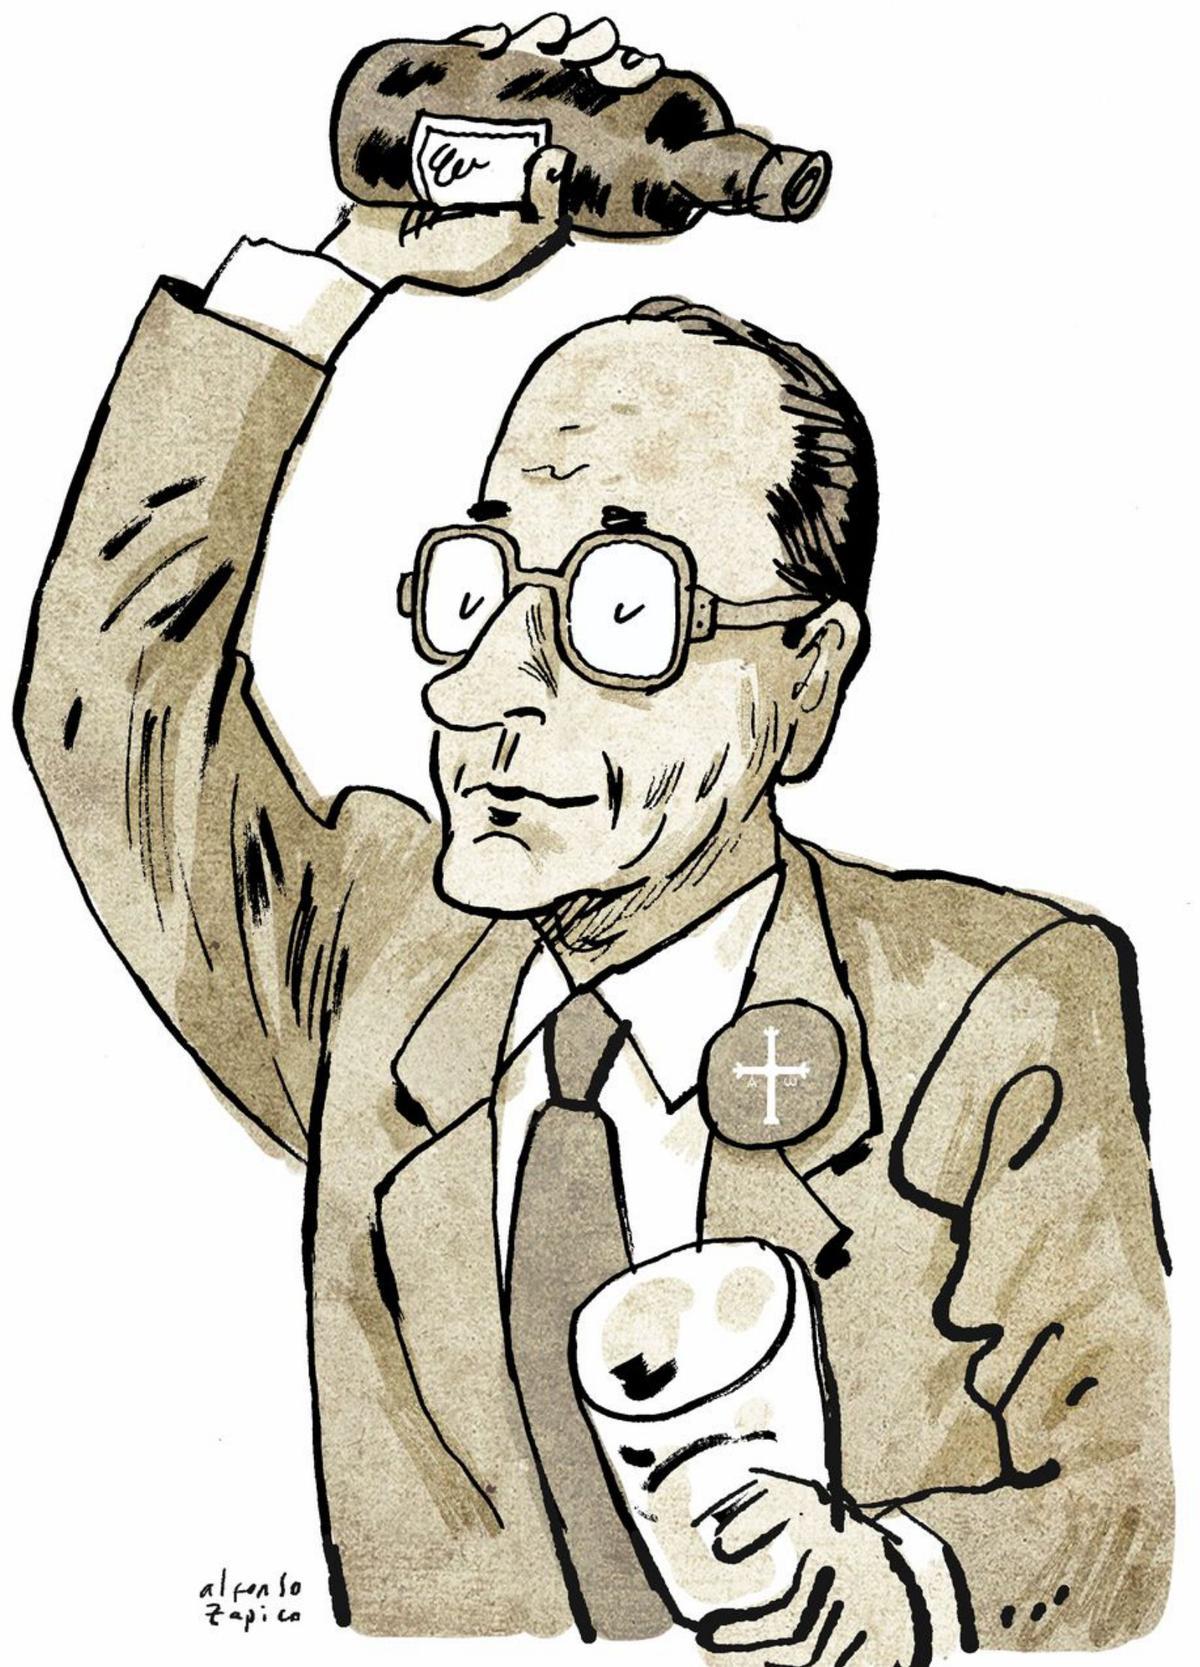 El dudoso origen de Jacques Chirac